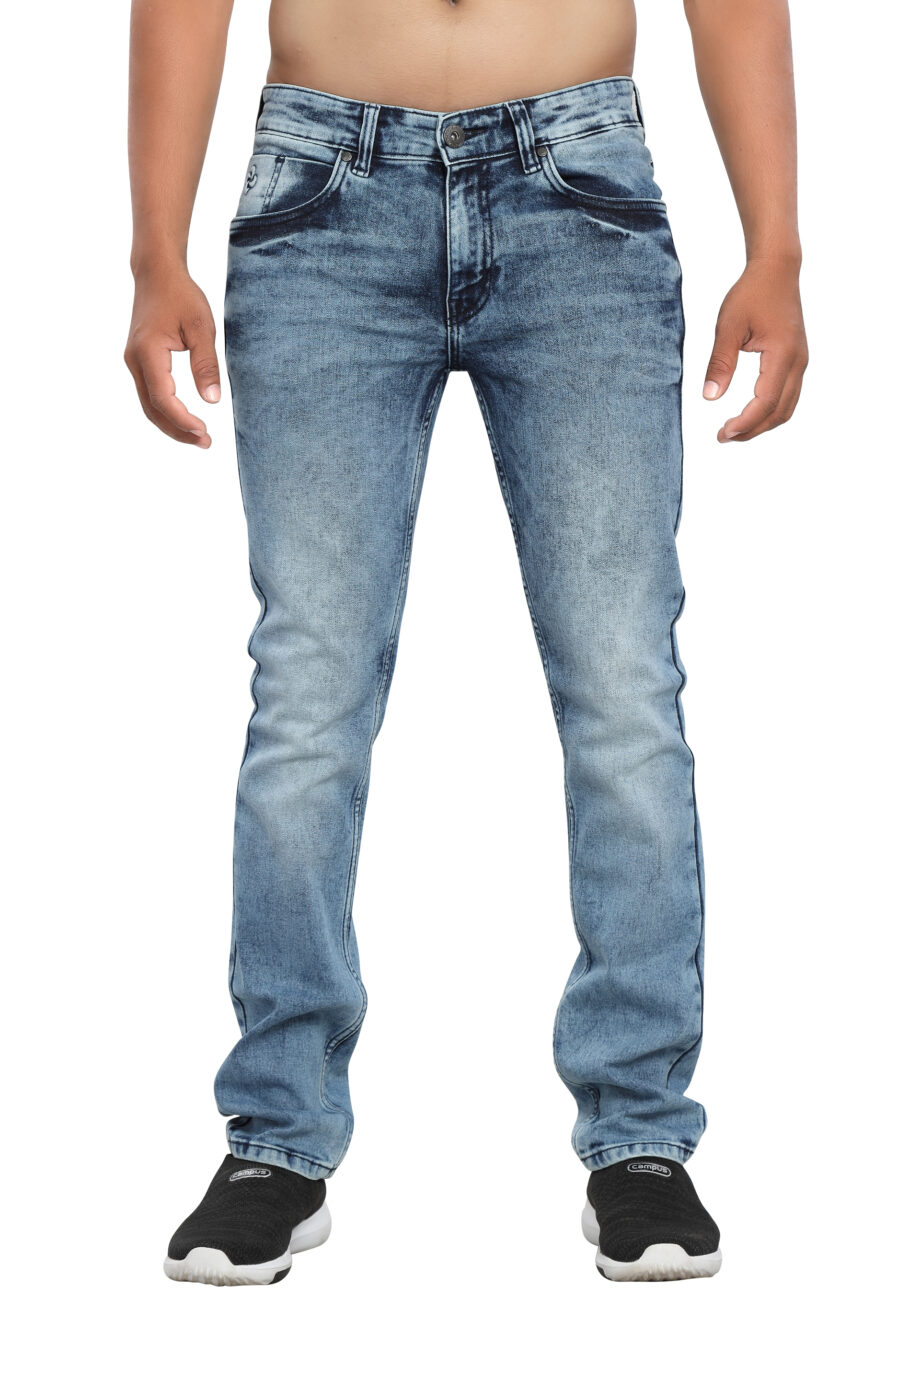 Stretchable branded light blue jeans for men